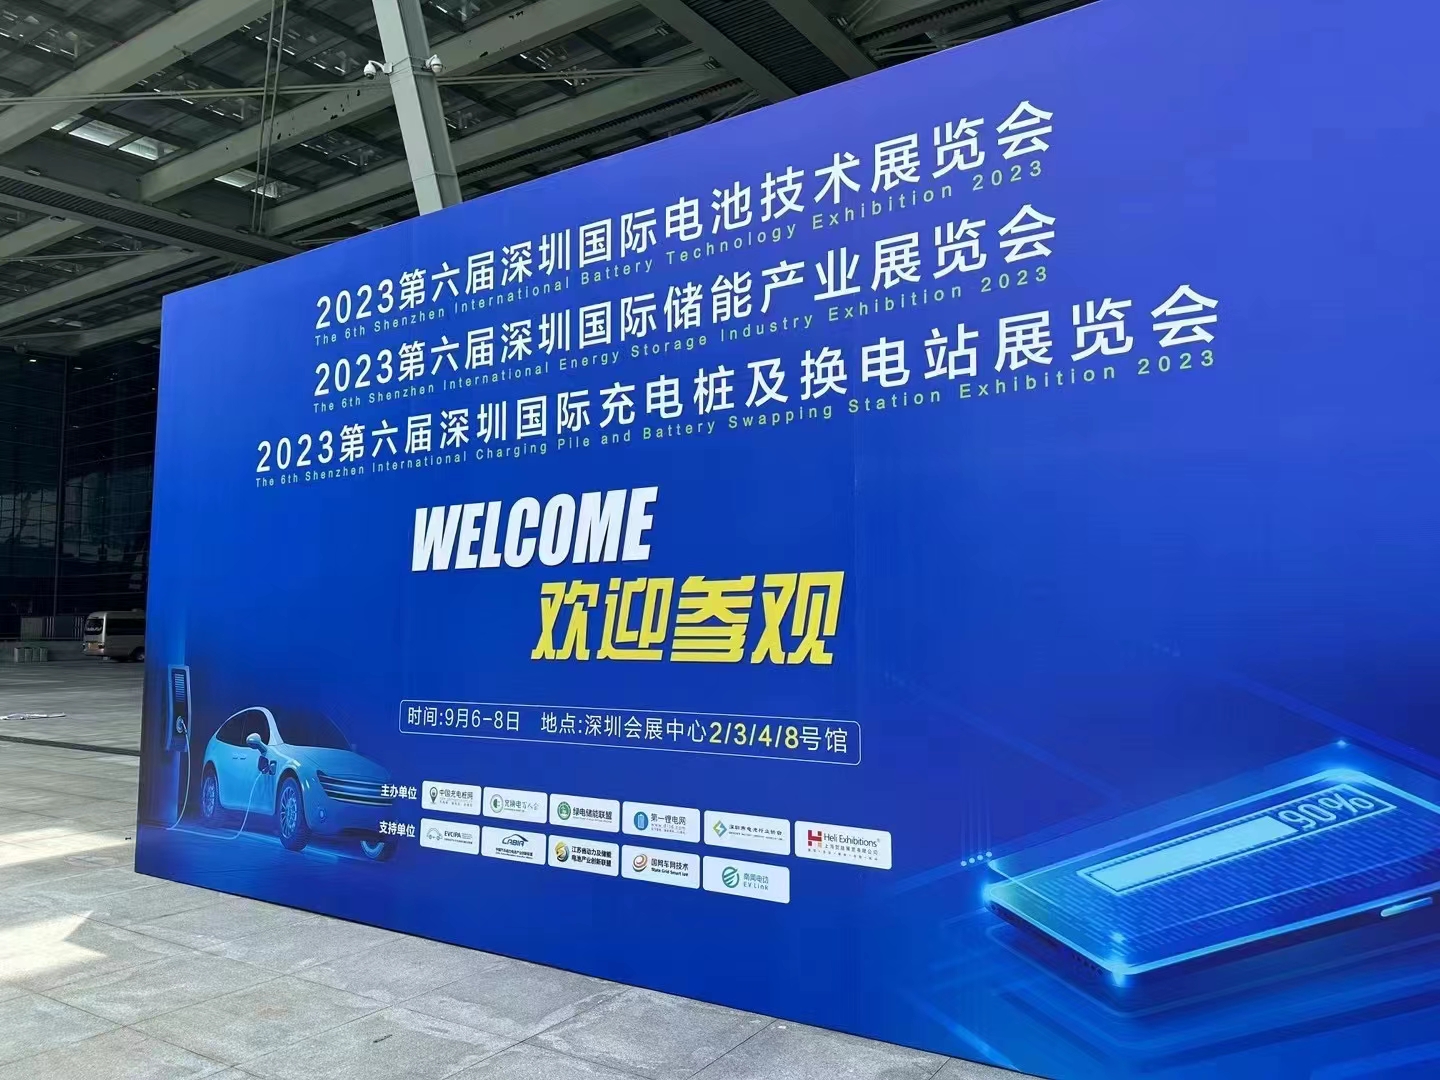 2023第六届深圳国际电池技术展览会  9月6-8日  深圳会展中心